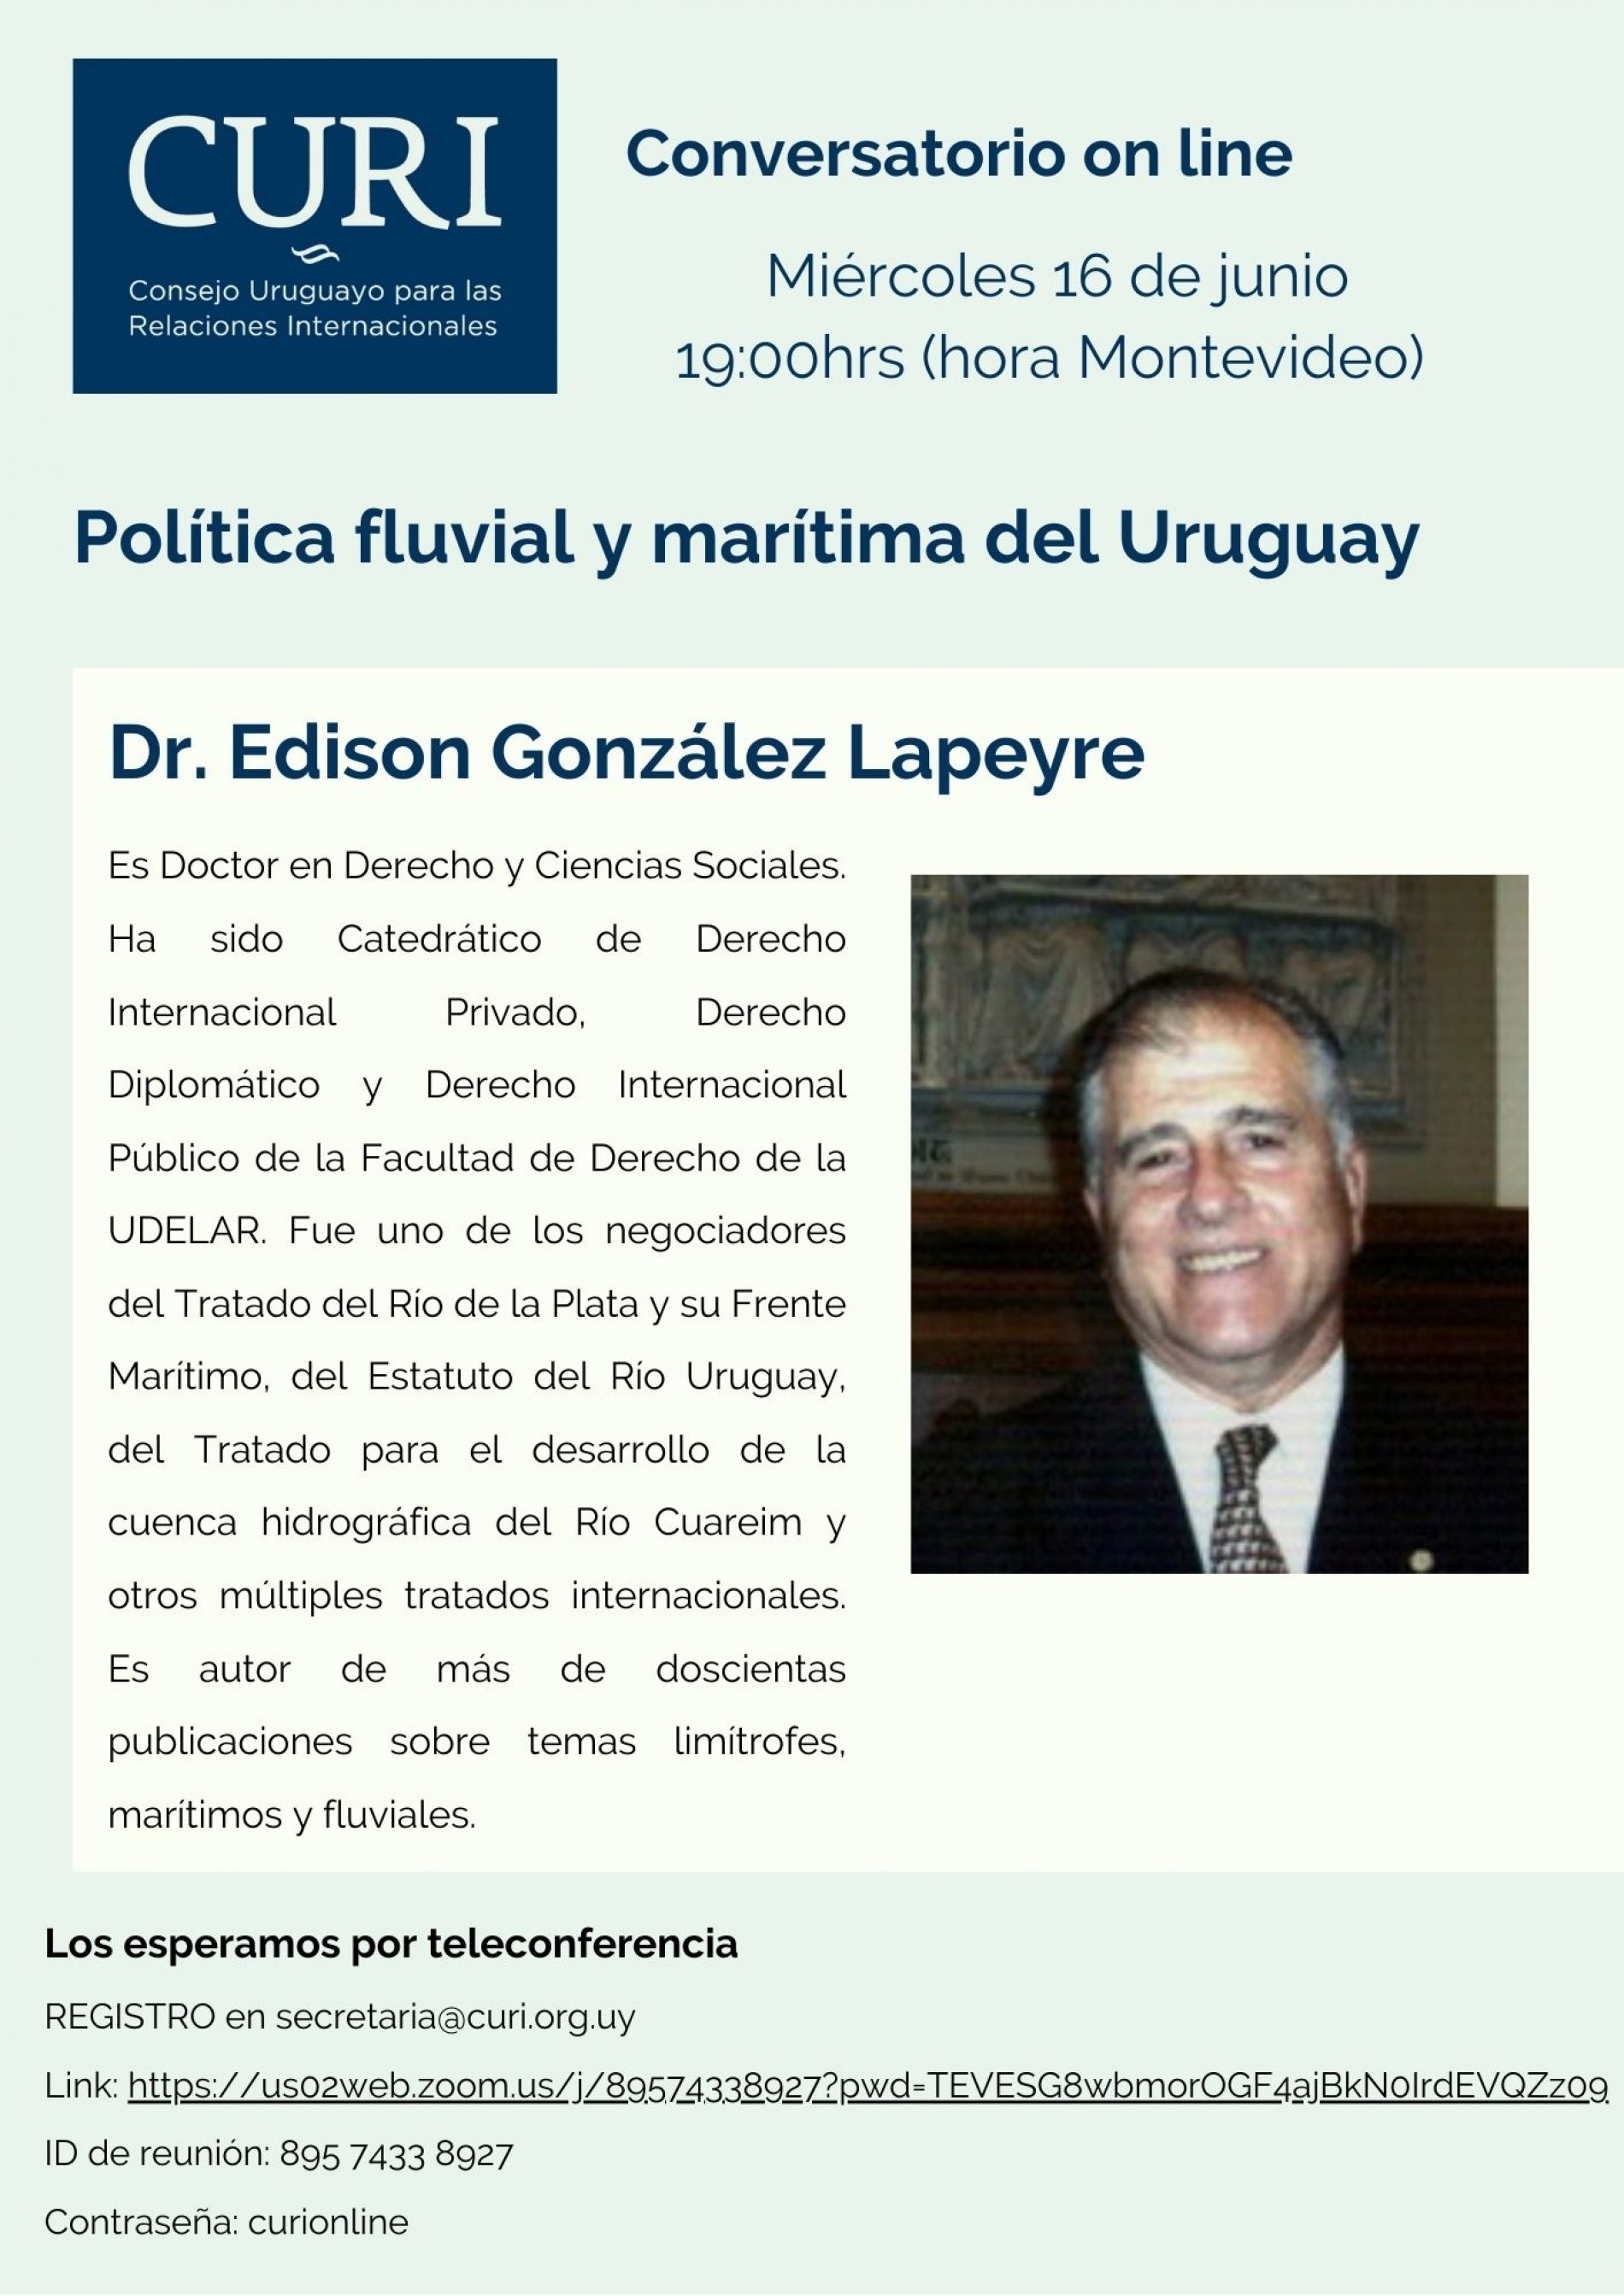 CURI ONLINE con Dr. Edison González Lapeyre.